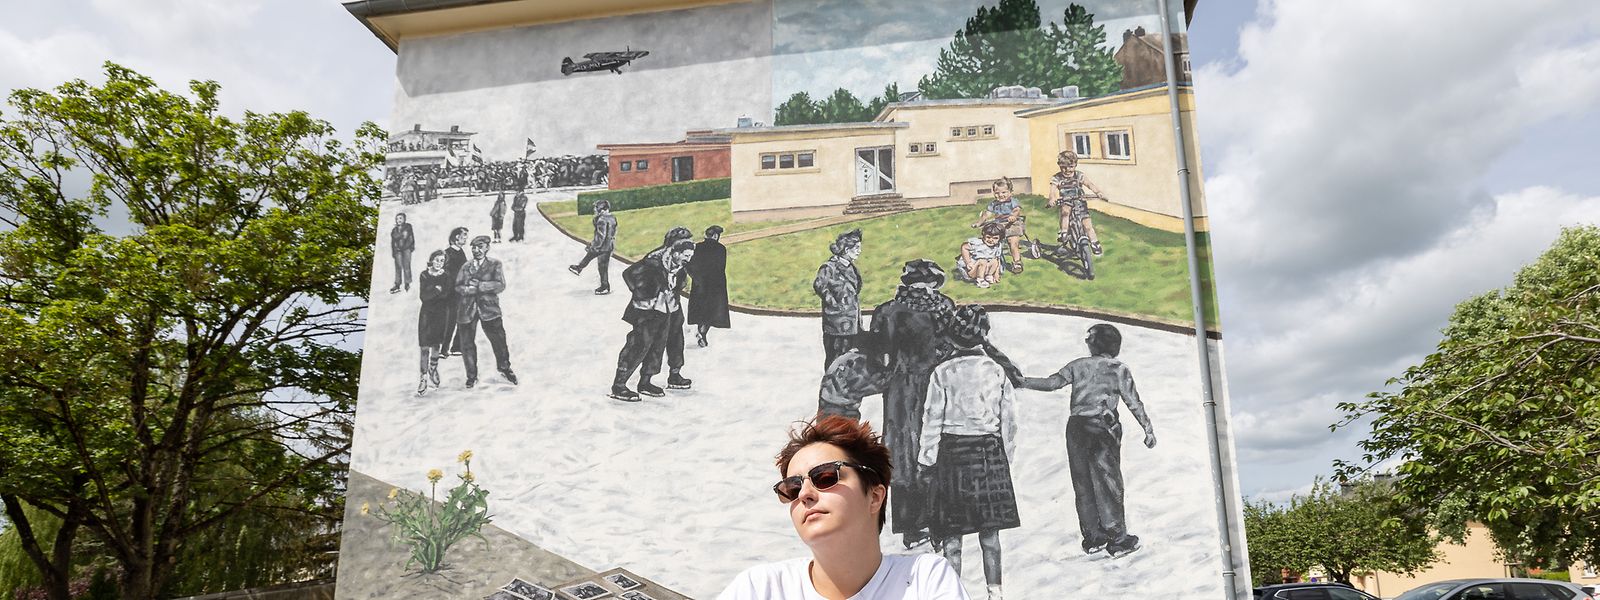 A artista Mariana Duarte Santos veio de Lisboa para pintar um mural dedicado à história do bairro de Lallange, em Esch-sur-Alzette.